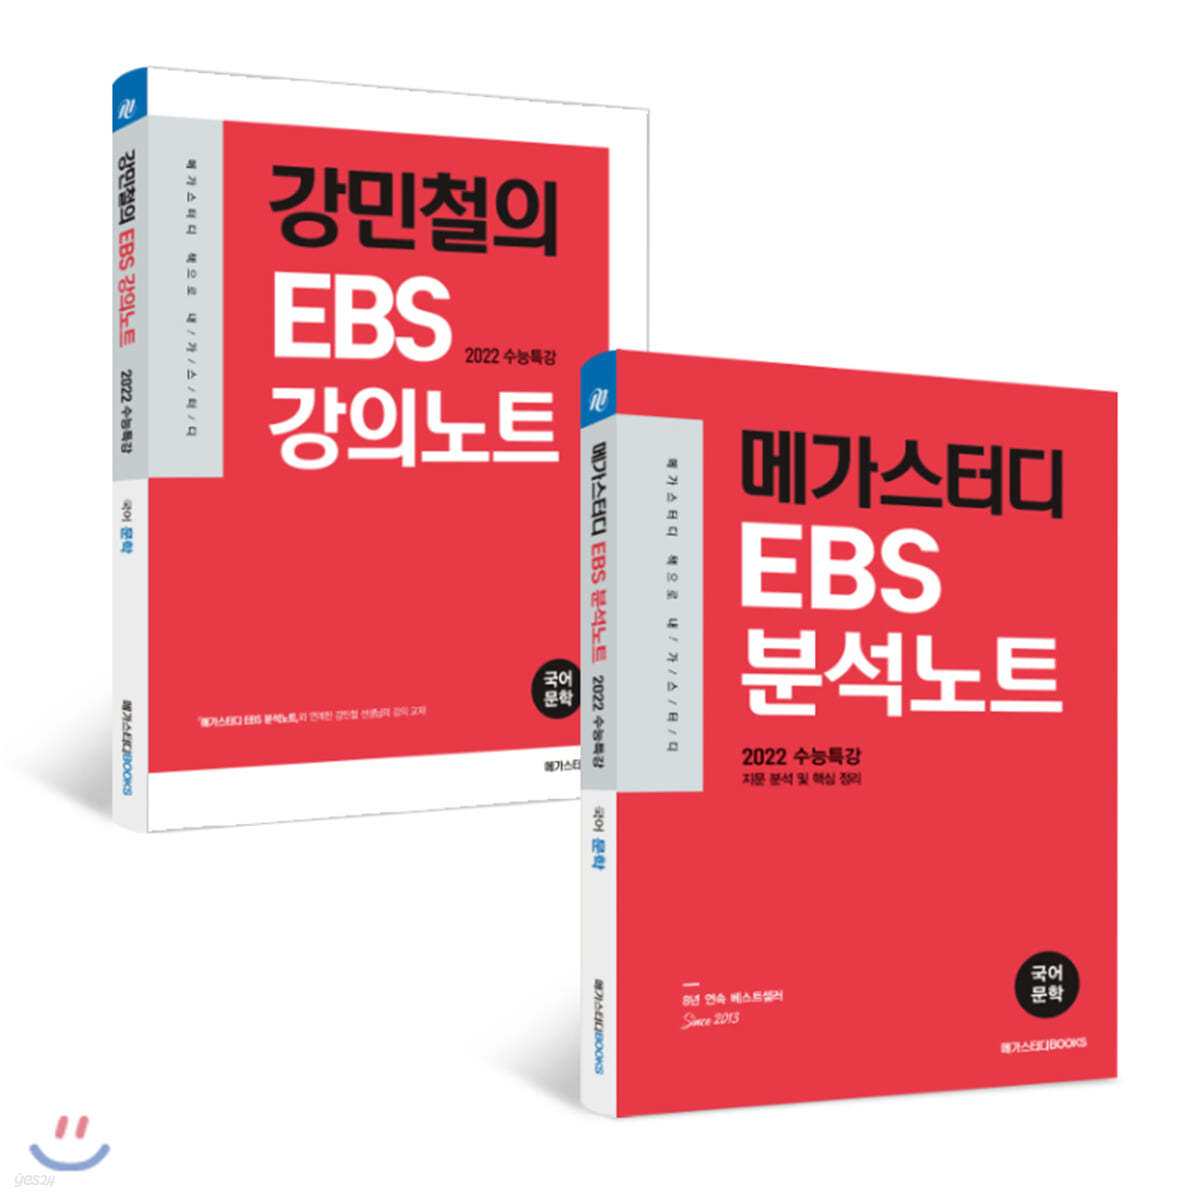 메가스터디 Ebs 분석노트 수능특강 문학 + 강민철의 강의노트 세트 - 예스24